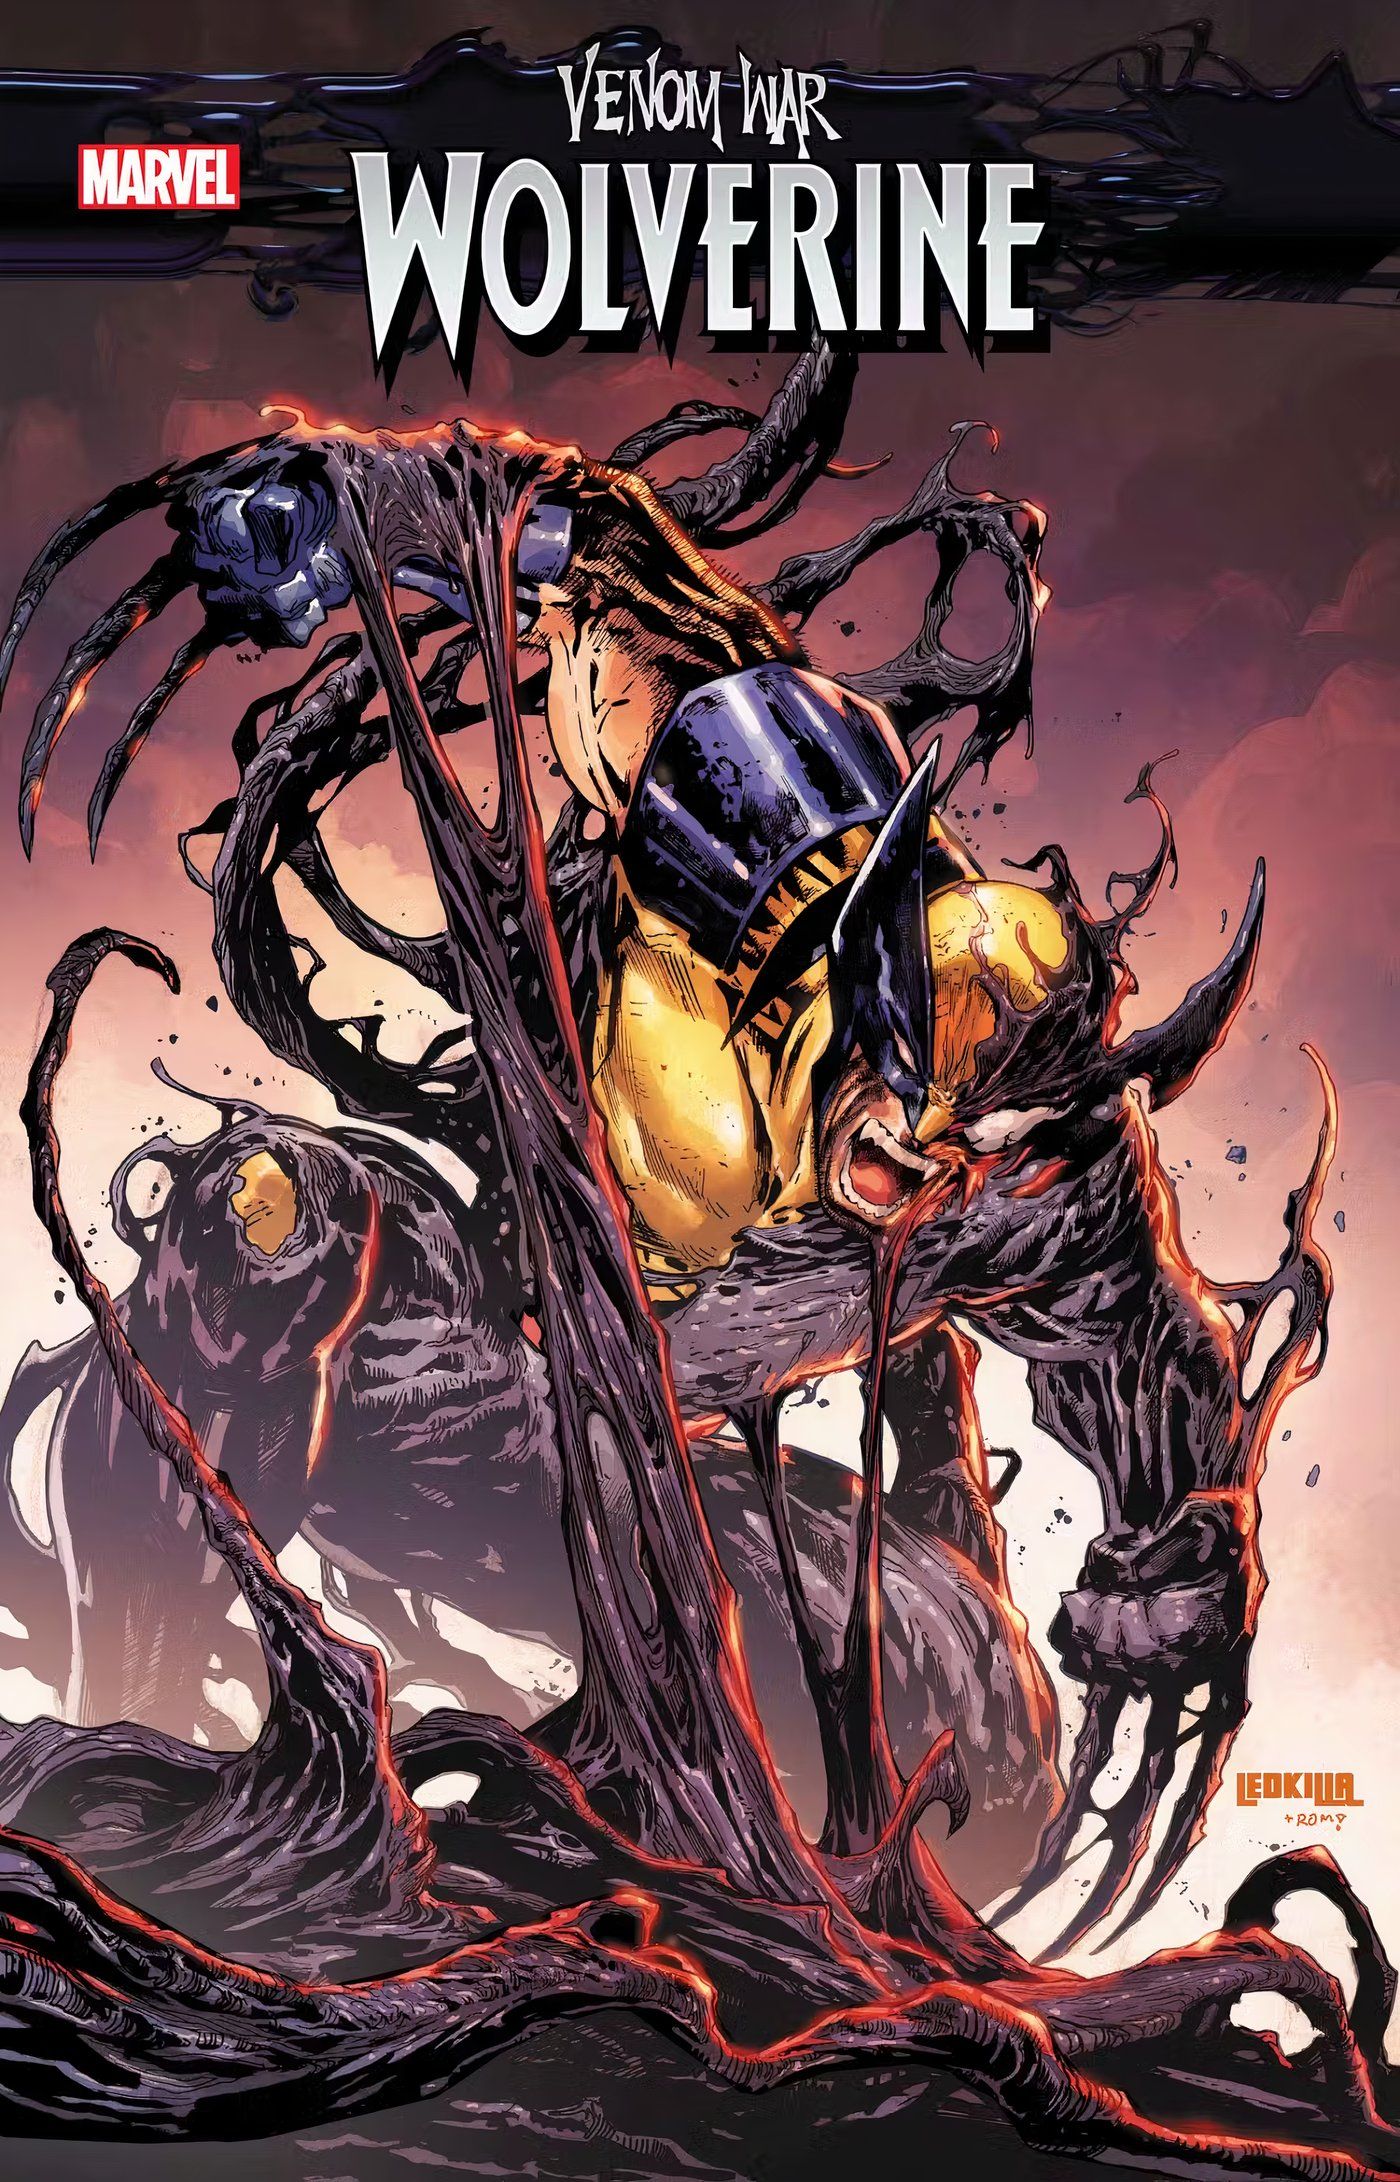 Venom War: Wolverine #1, Wolverine faz uma careta quando um simbionte se liga a ele.